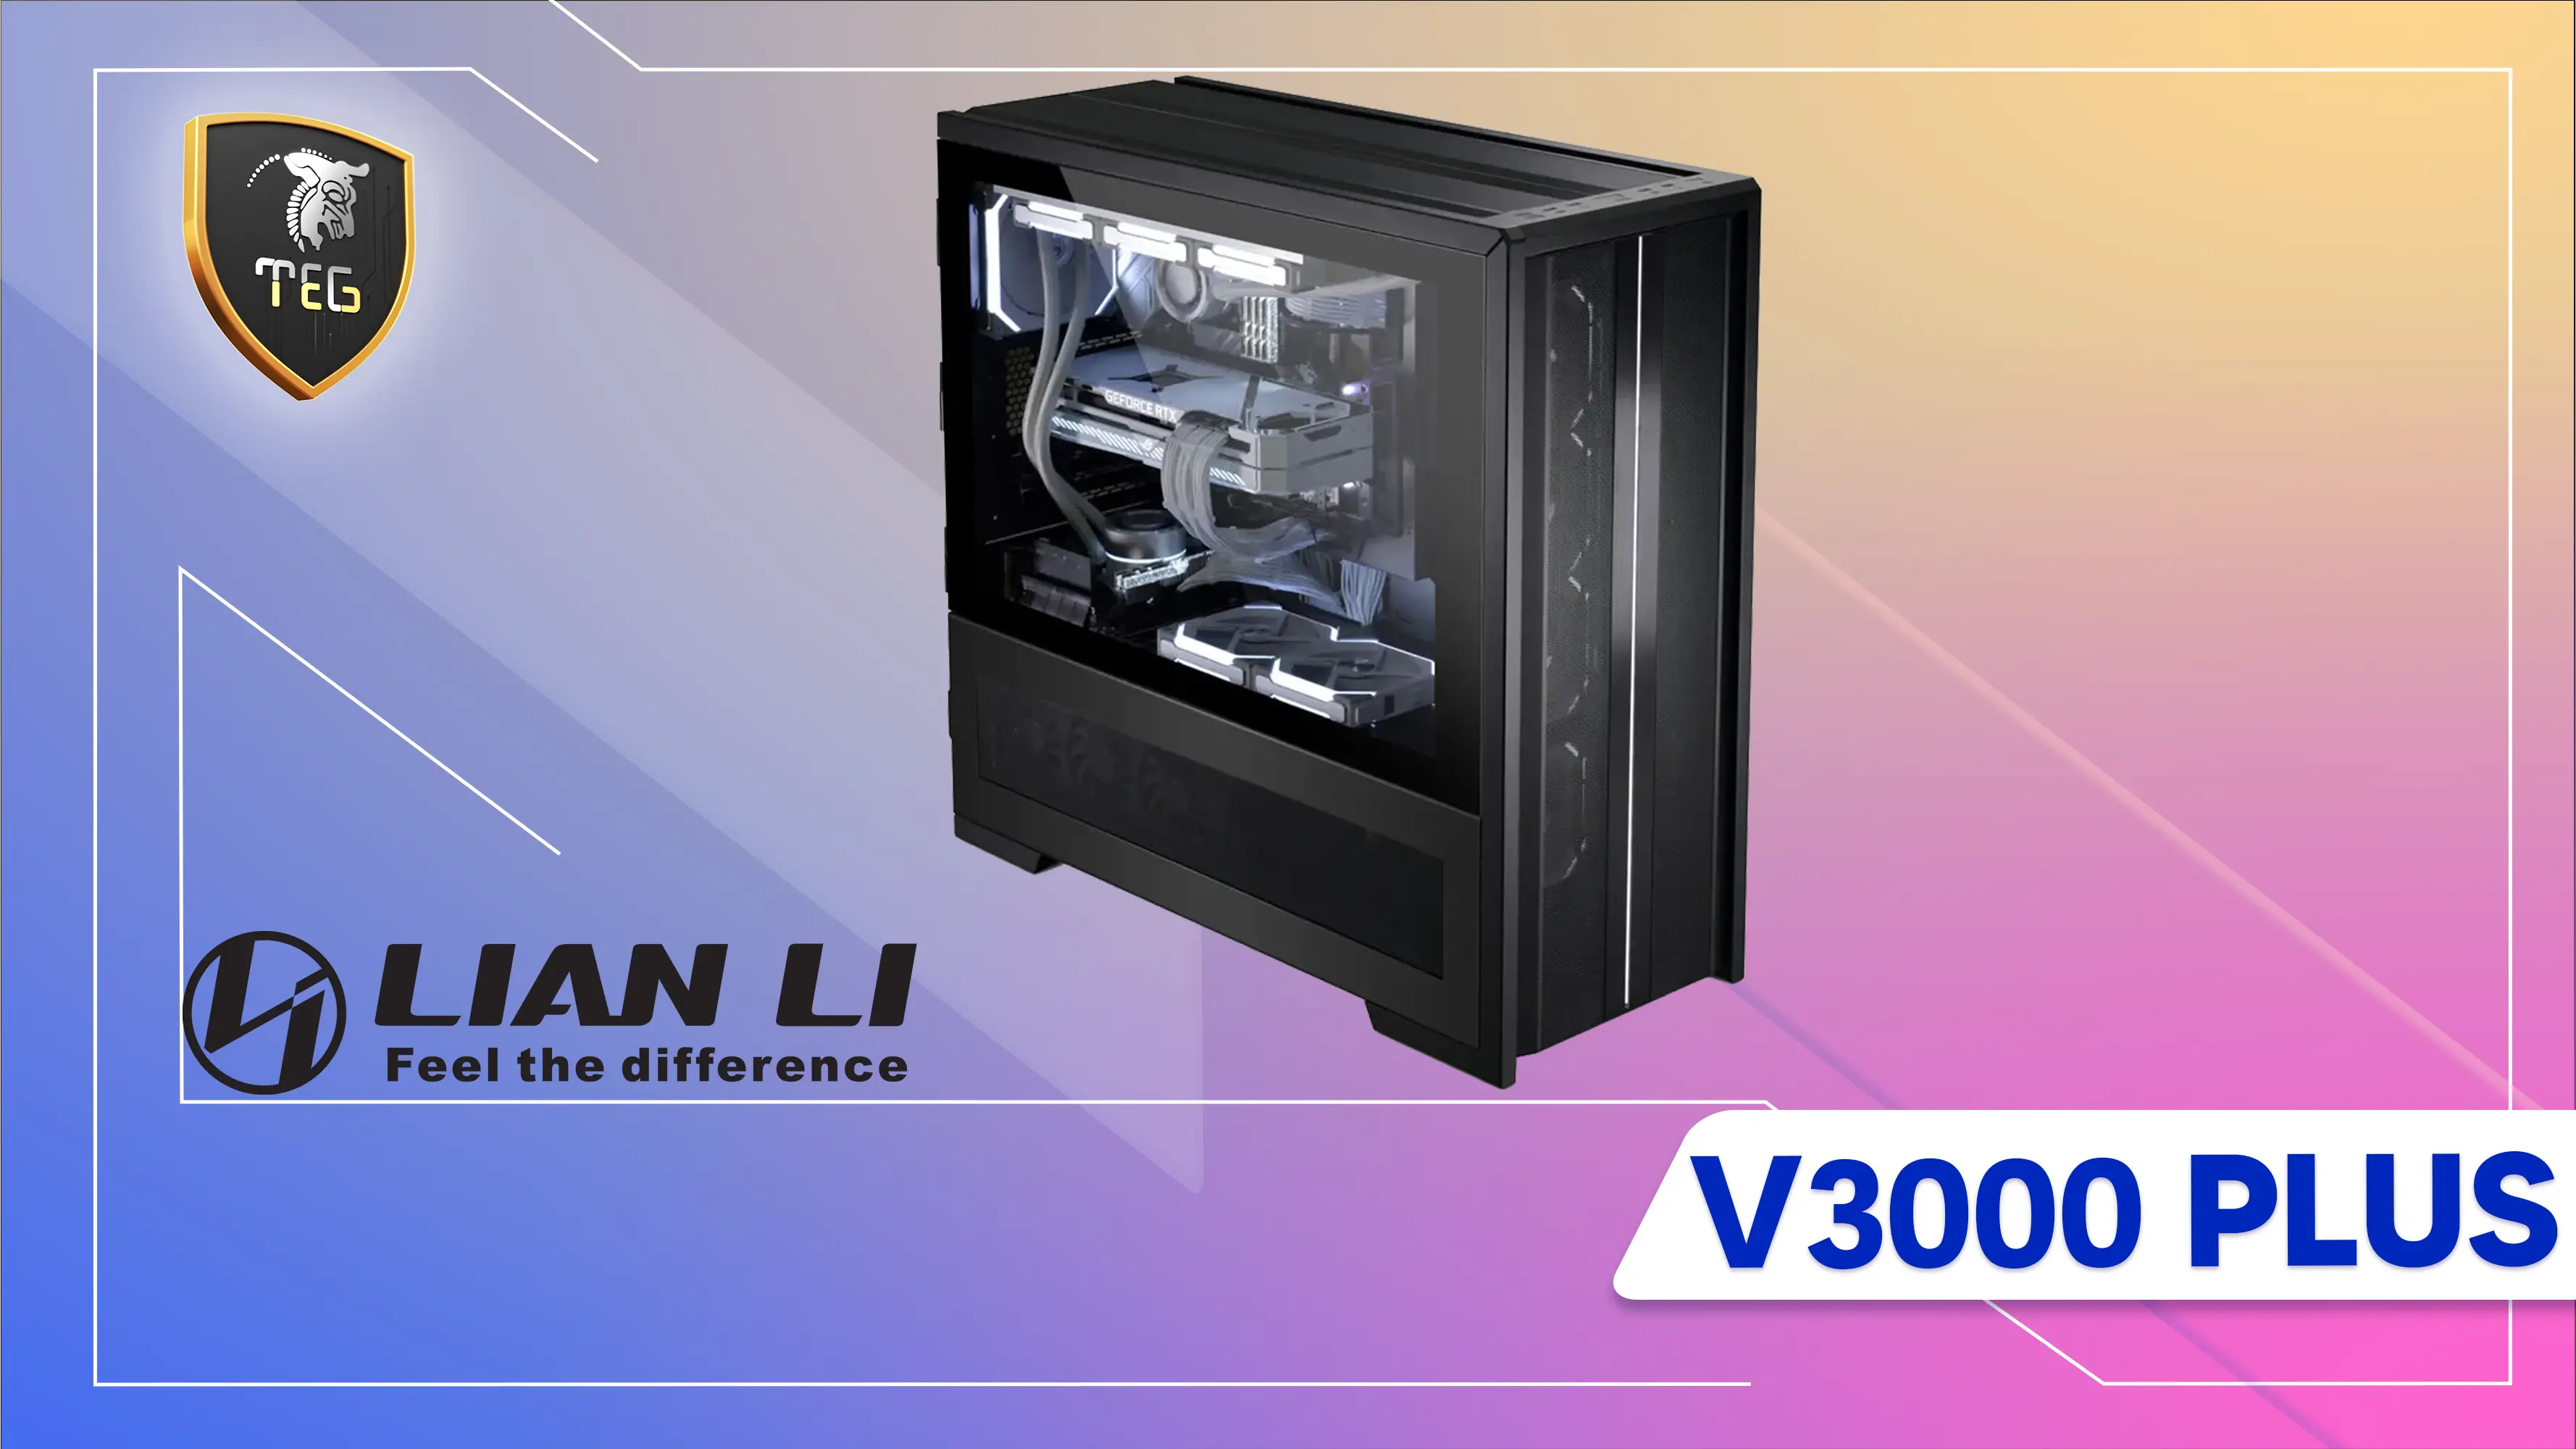 معرفی خفن ترین کیس لیان لی مدل V3000 PLUS